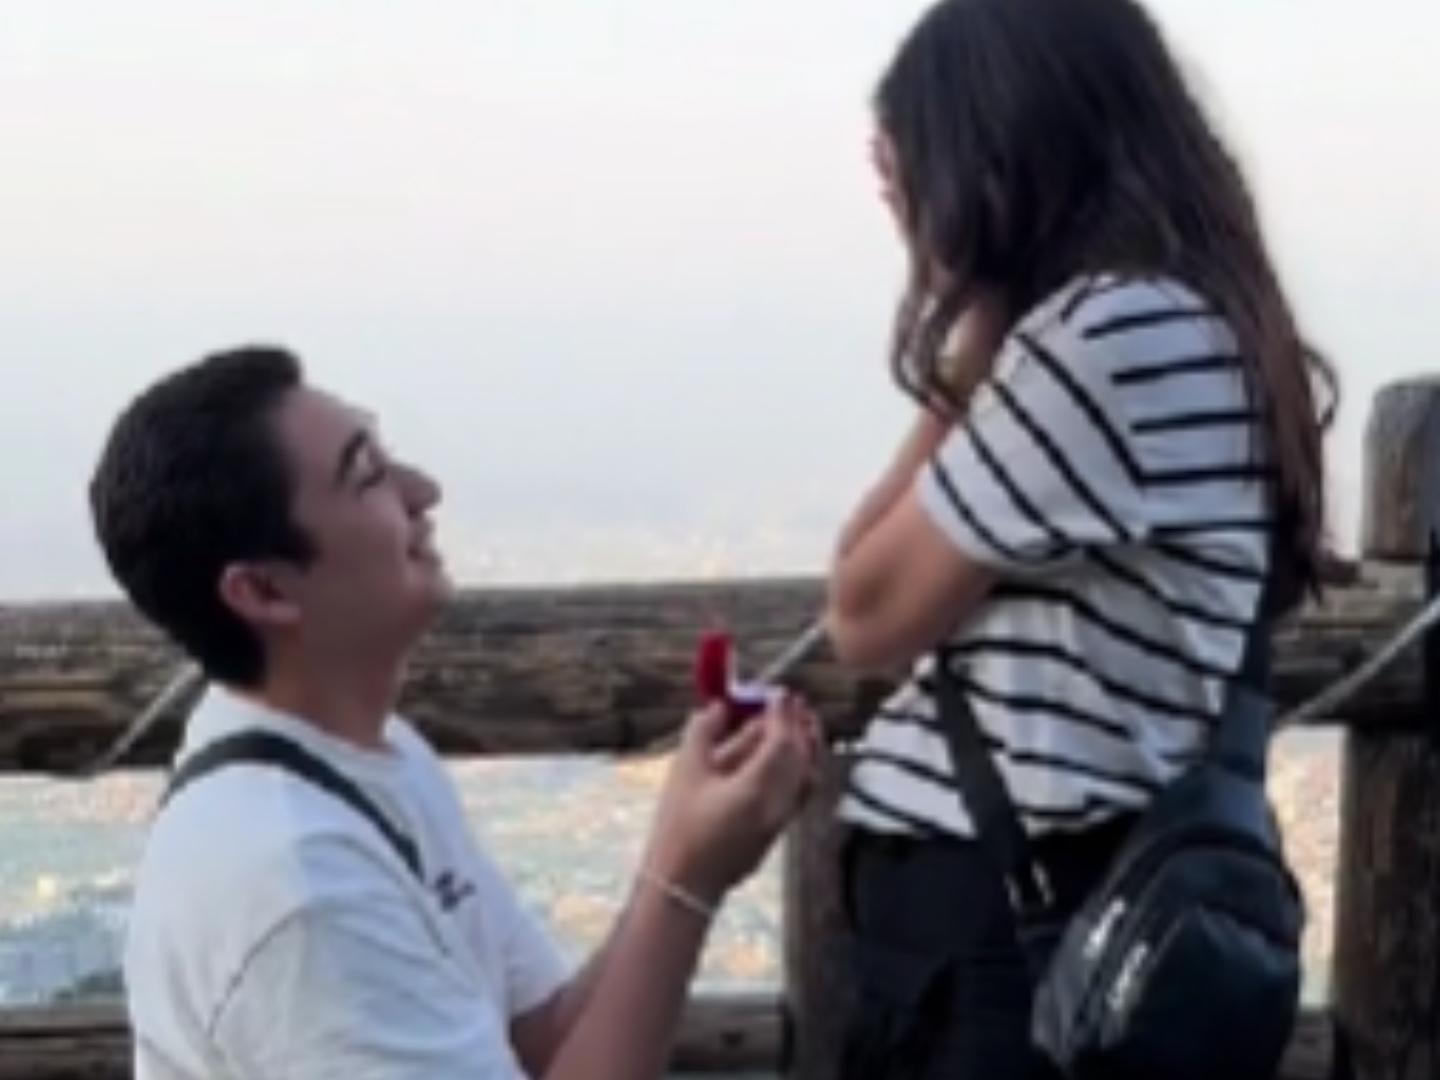 Video | ¿Señales? Petición de Matrimonio en un Barranco Termina Mal